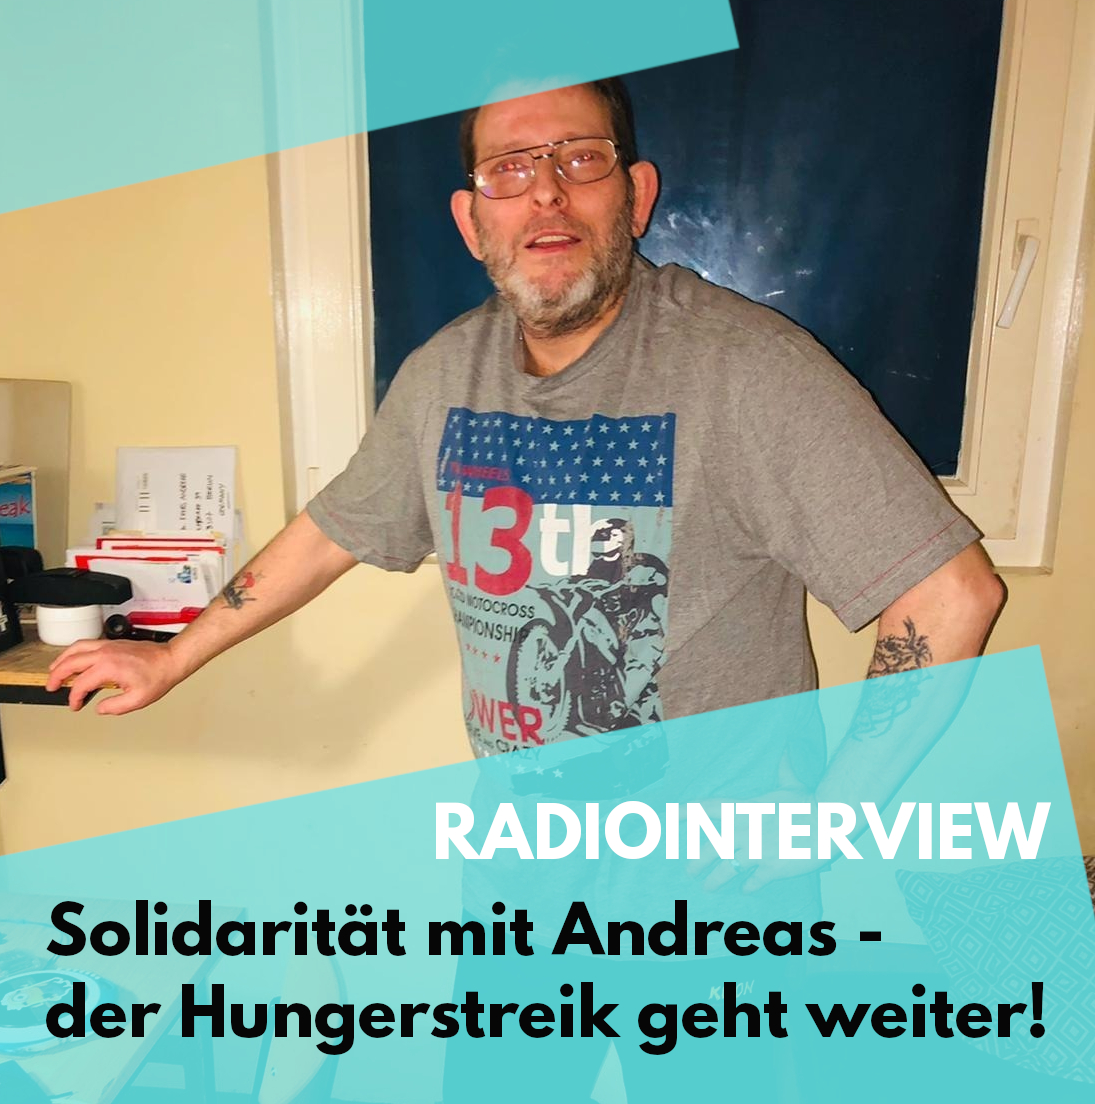 Update Andreas Krebs: Die Anstaltsleitung hat Andreas verarscht – der Hungerstreik geht doch weiter!